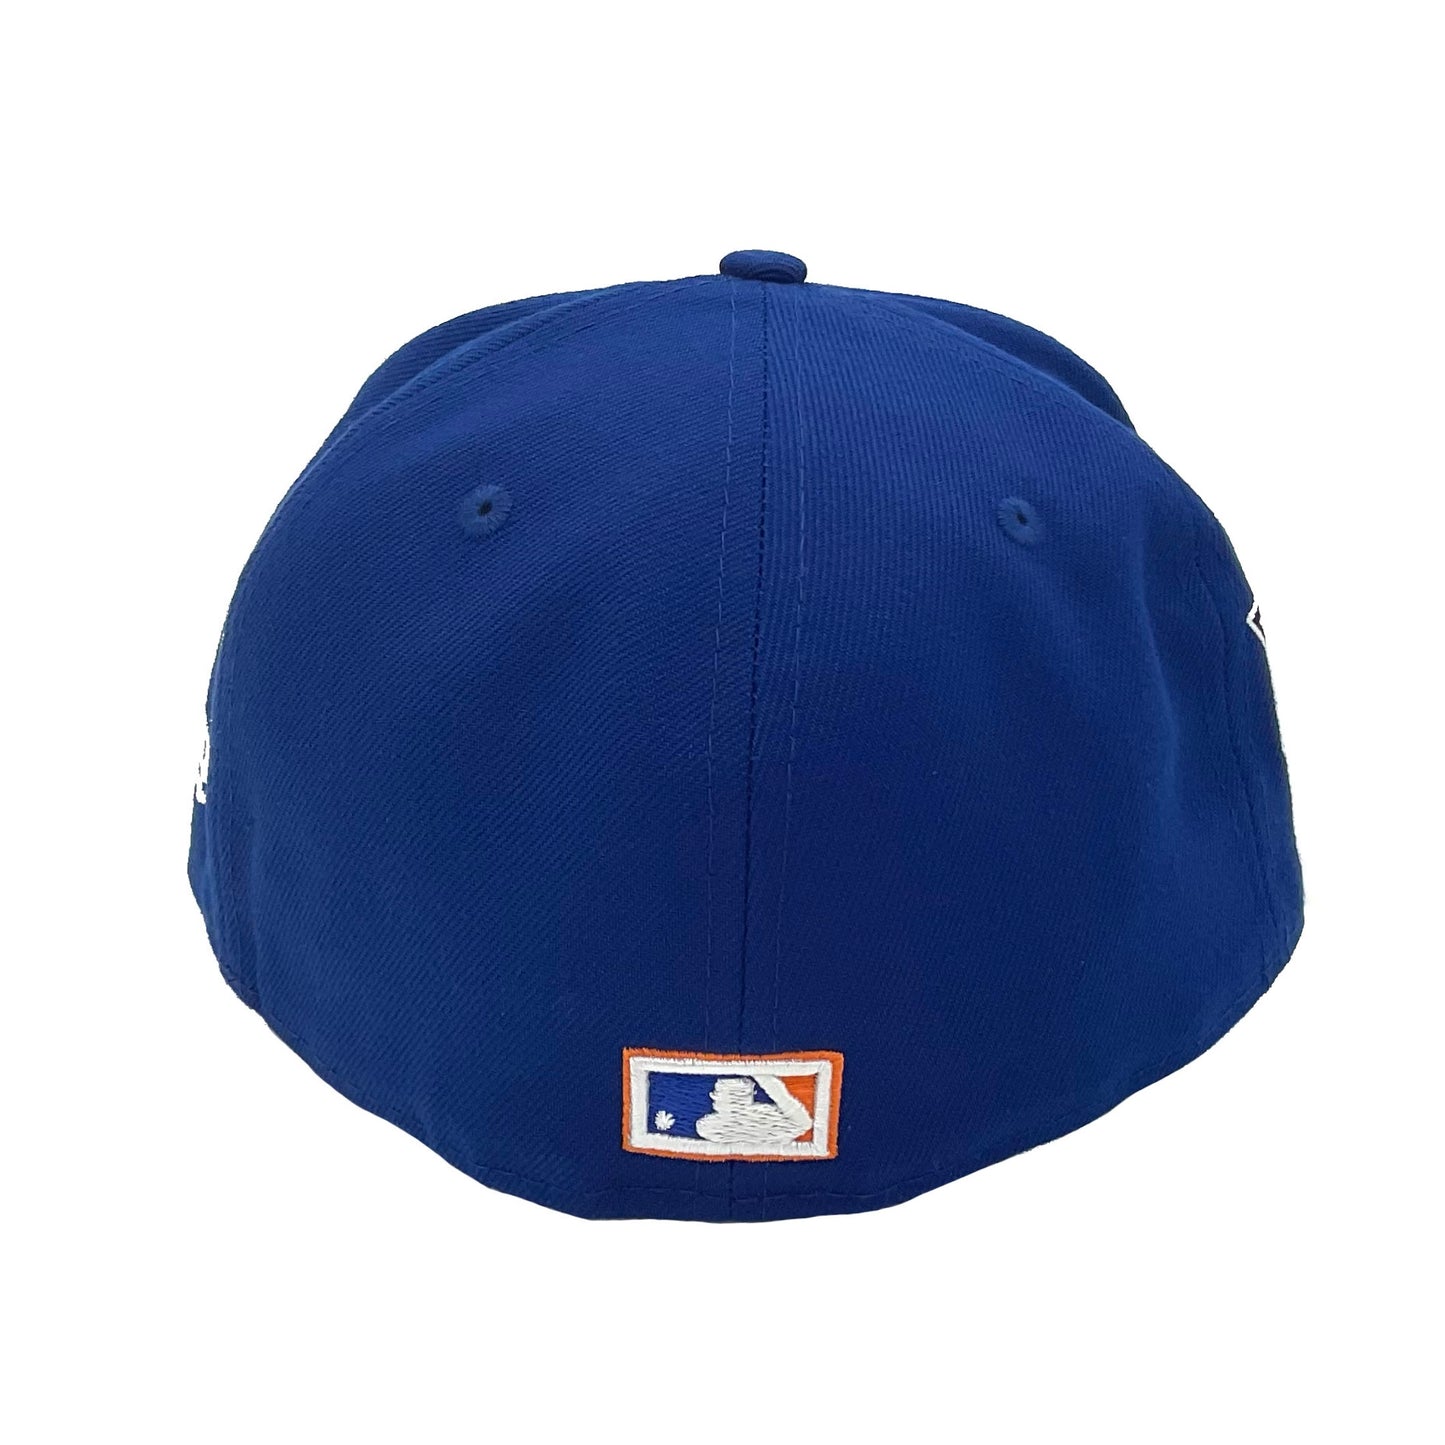 New York Mets New Era Cap WS2000